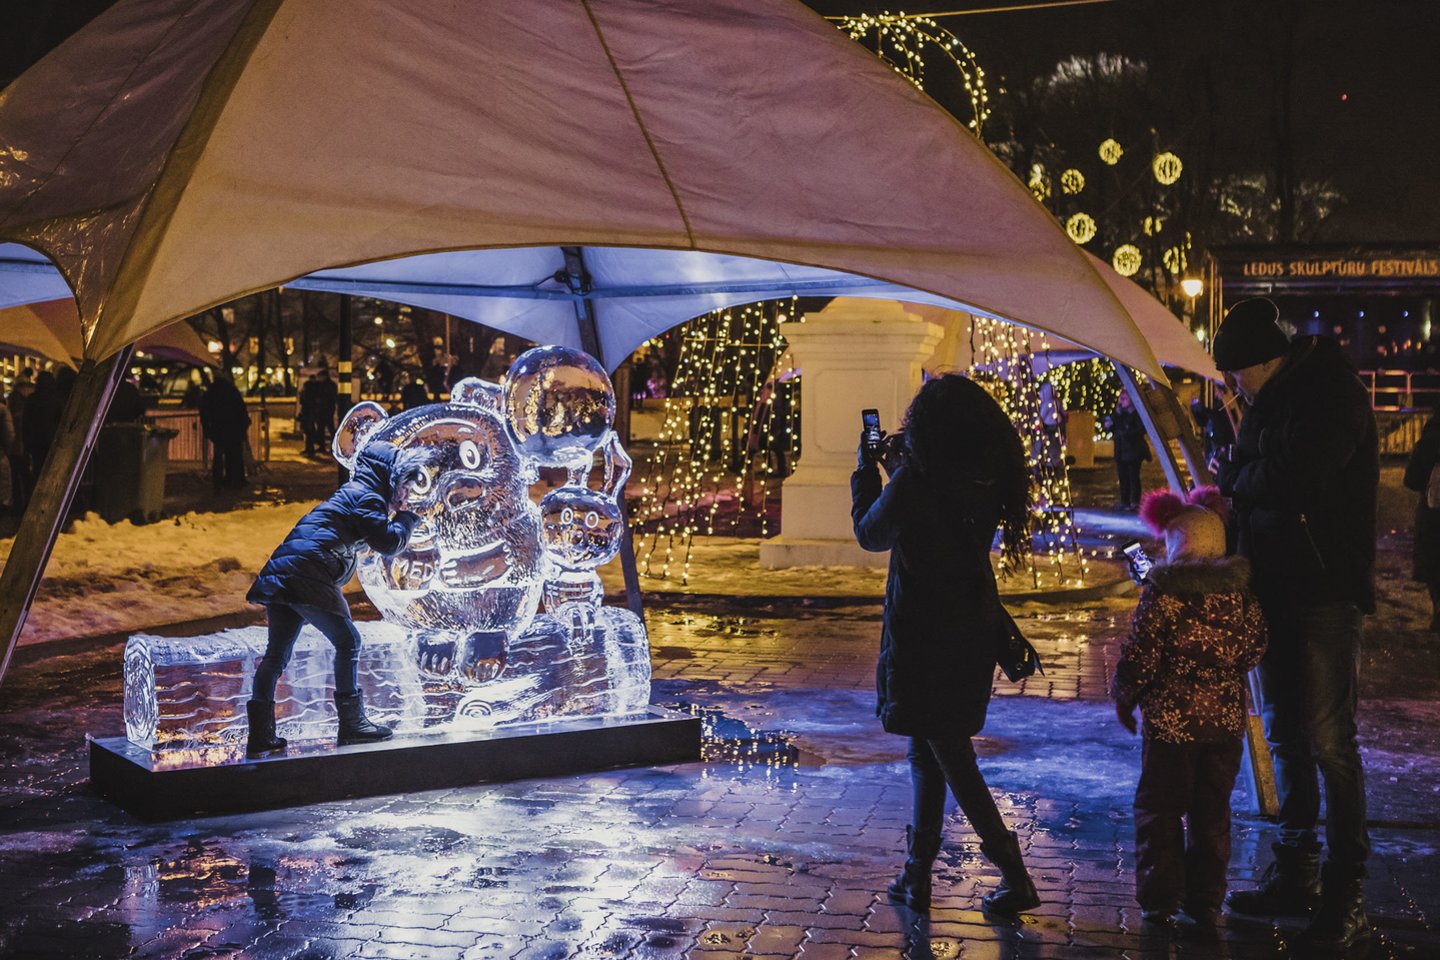   Jelgavoje vyksta 21-asis ledo skulptūrų festivalis. Šiemetinės šventės tema - kinas.<br> Organizatorių nuotr.